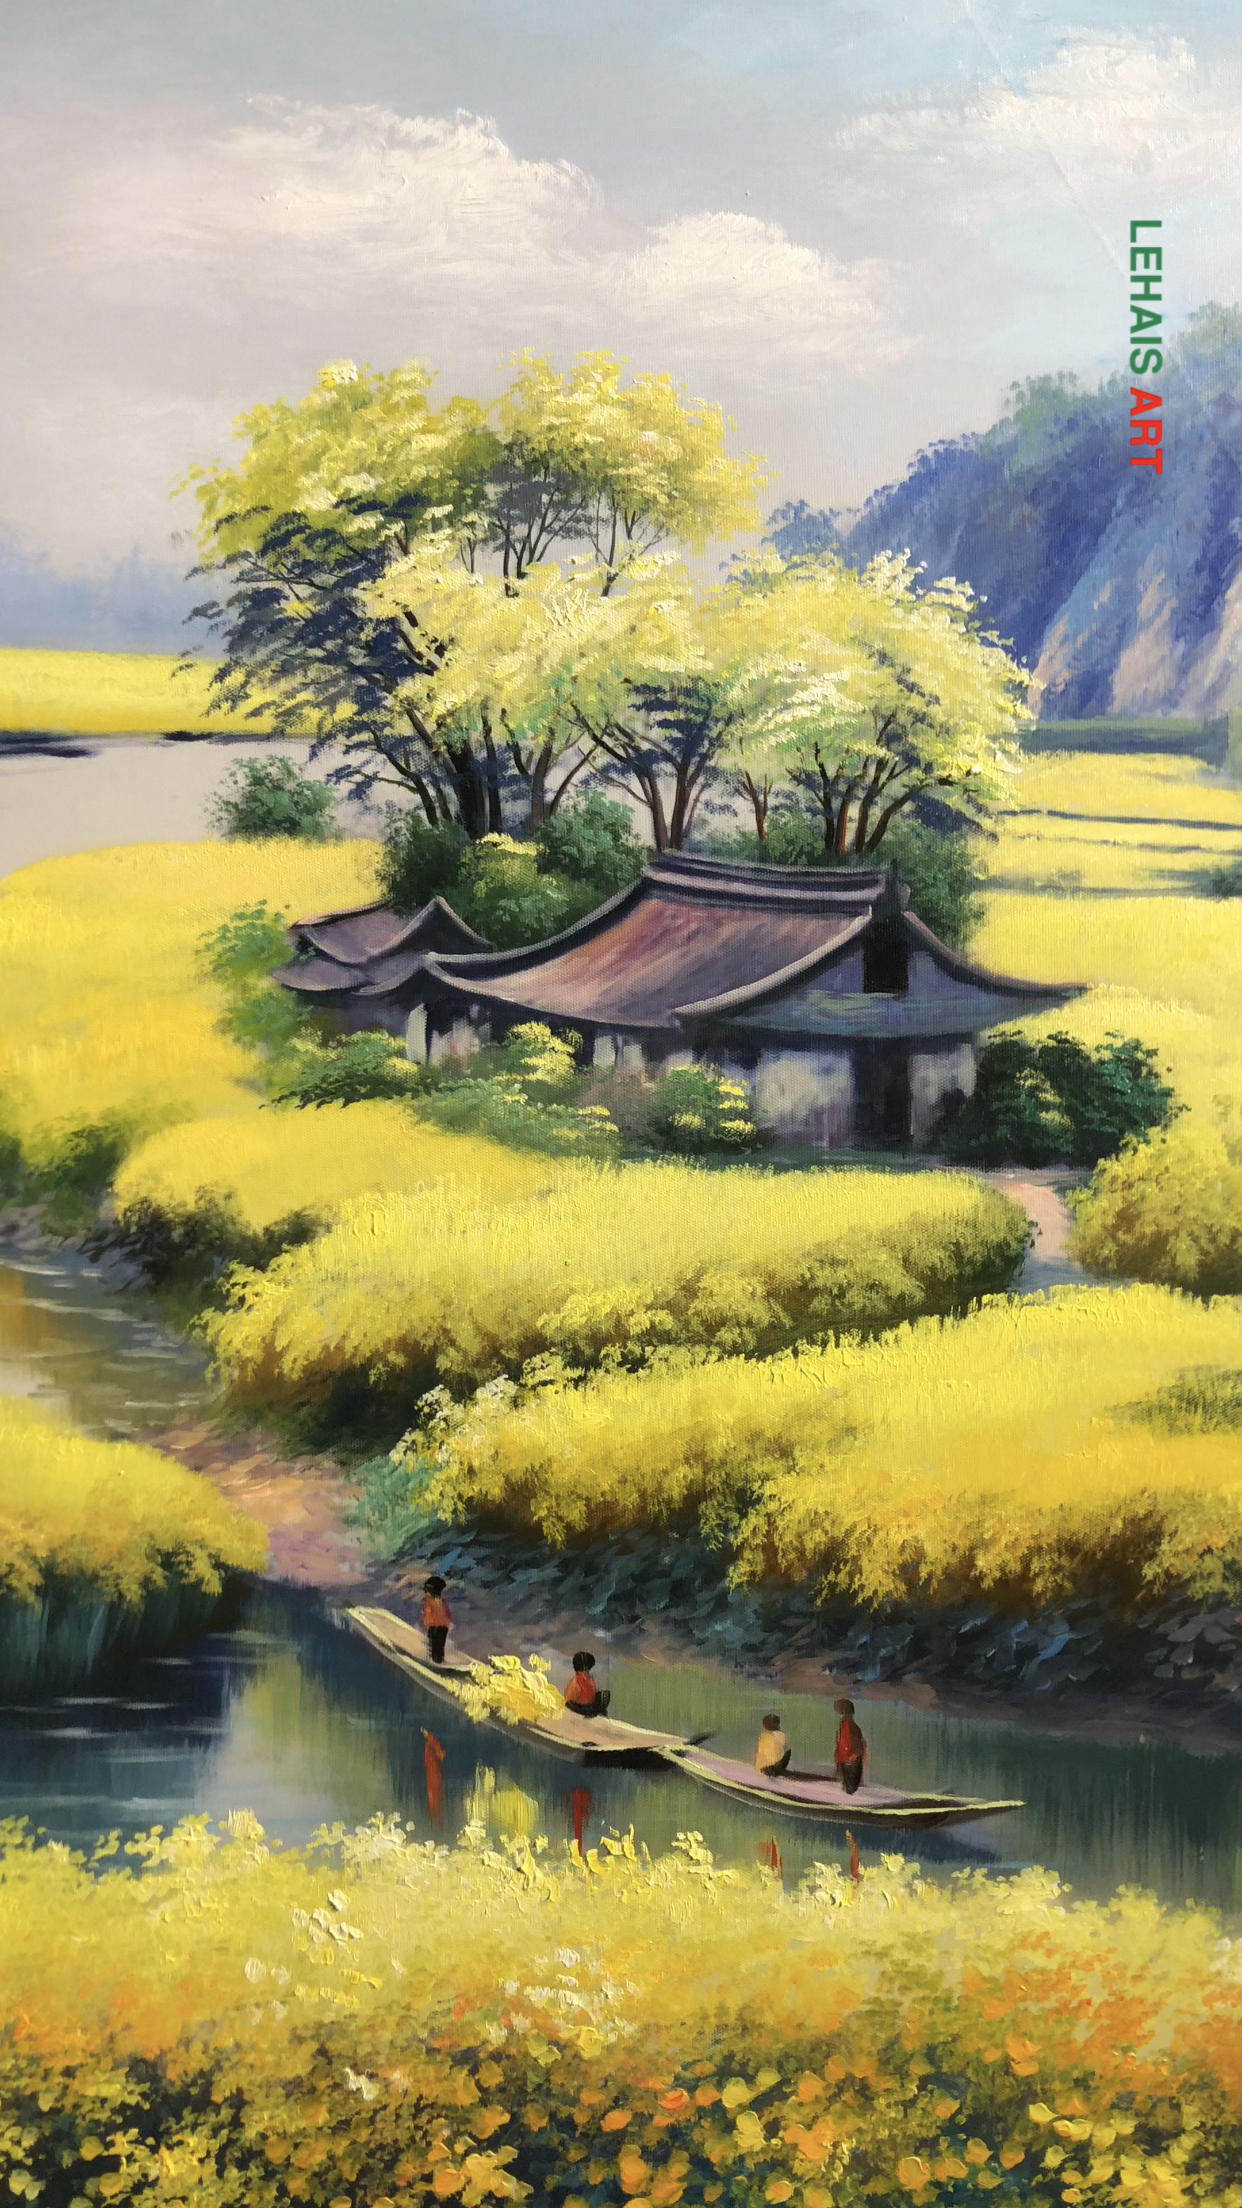 Ai yêu cánh đồng hoa cải vàng rực trong bức tranh sơn dầu này không?